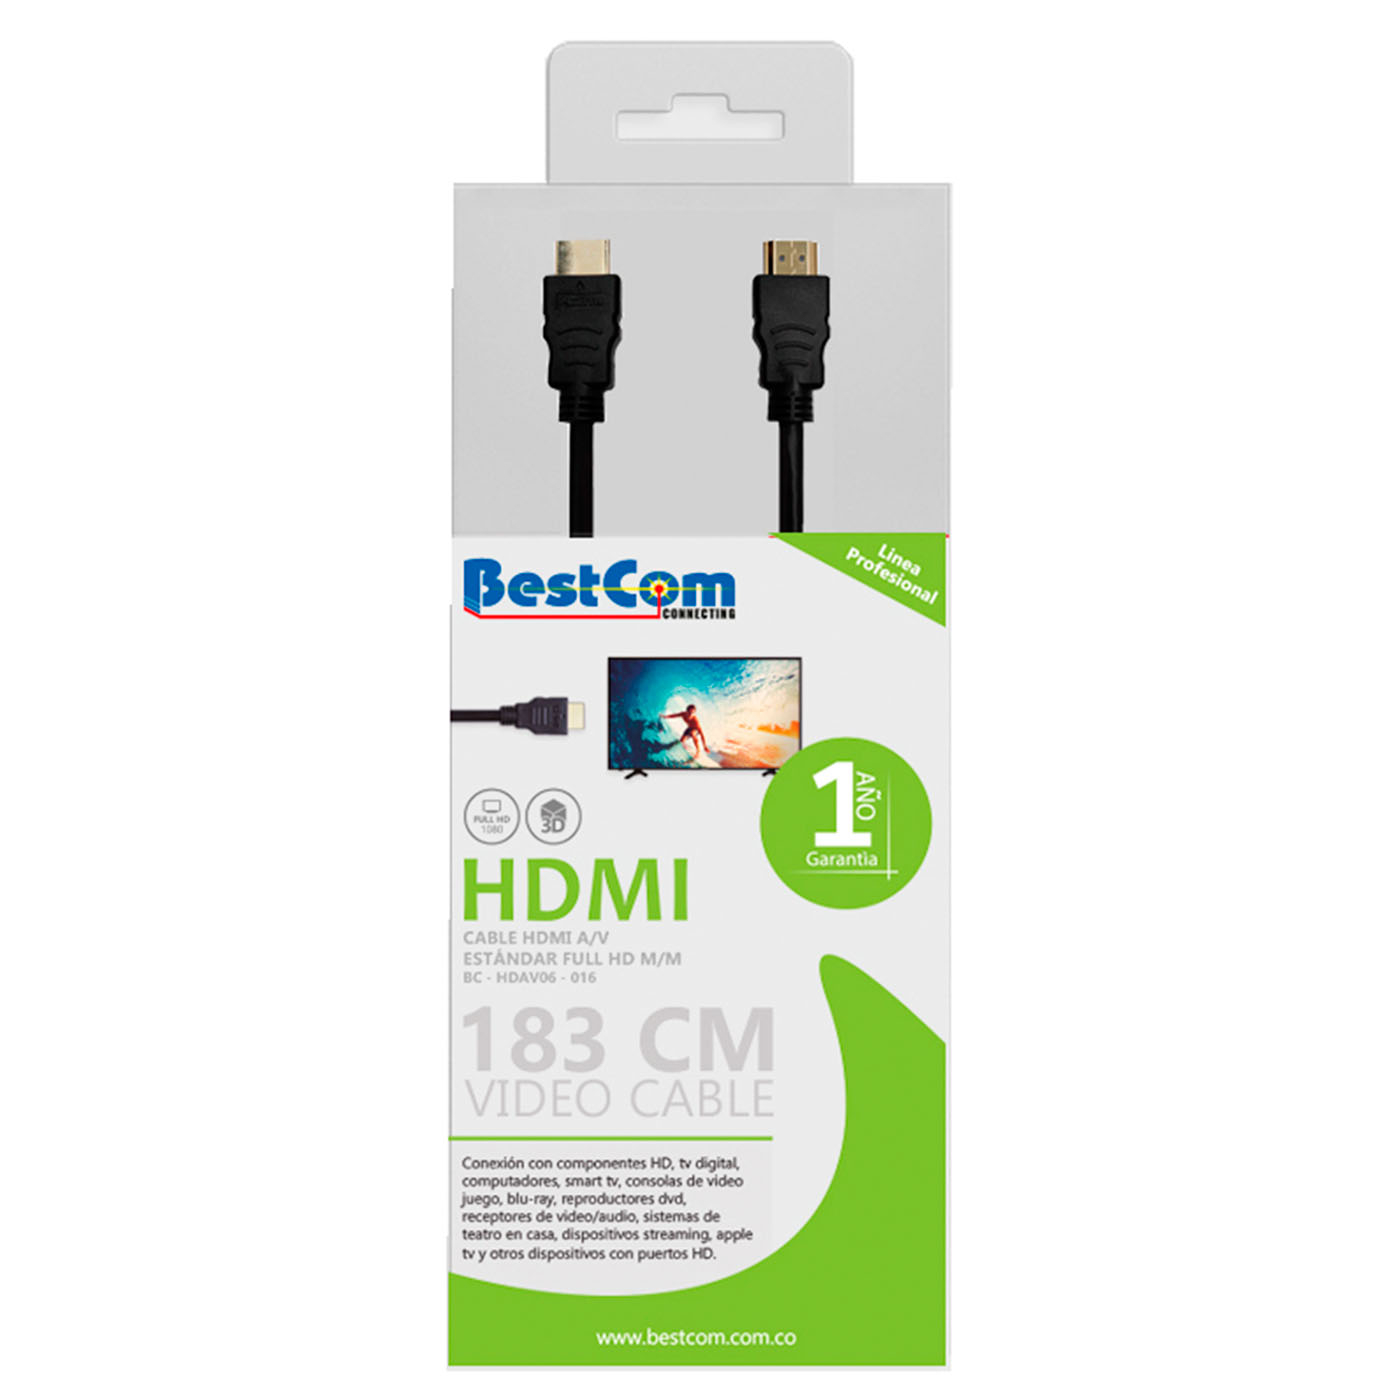 Cable Hdmi De 3 Metros Video Full HD 1080P, Compatible con Dispositivos  como Xbox, Playstation, Pc, Proyectores : : Electrónicos